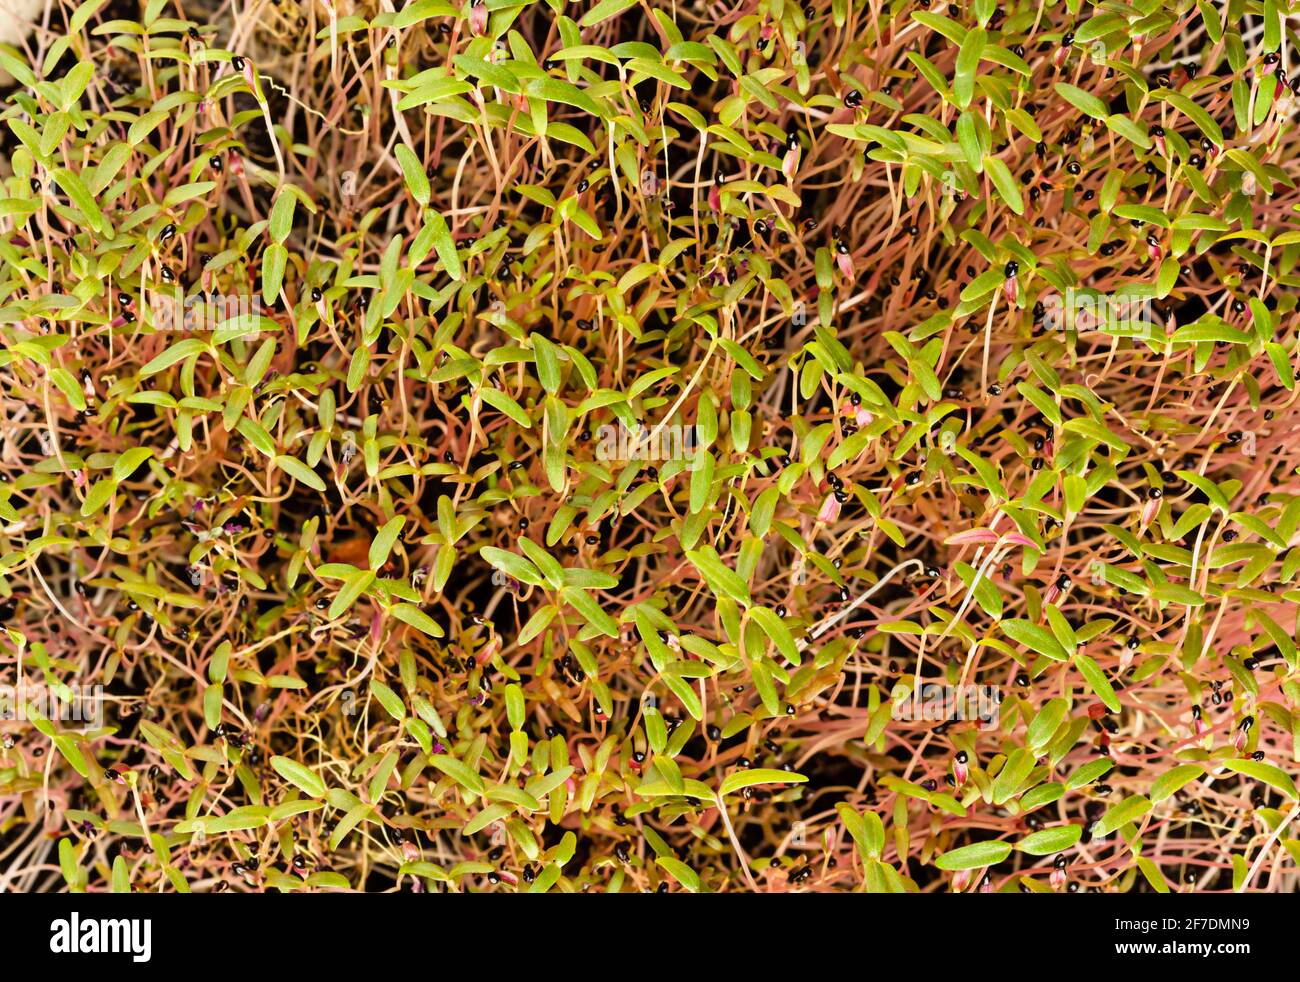 Amaranth-Sprossen mit schwarzen Samenschichten, von oben. Bereit Amaranthus Microgreens zu essen. Grüne Triebe, Sämlinge, junge Pflanzen und Blätter. Stockfoto